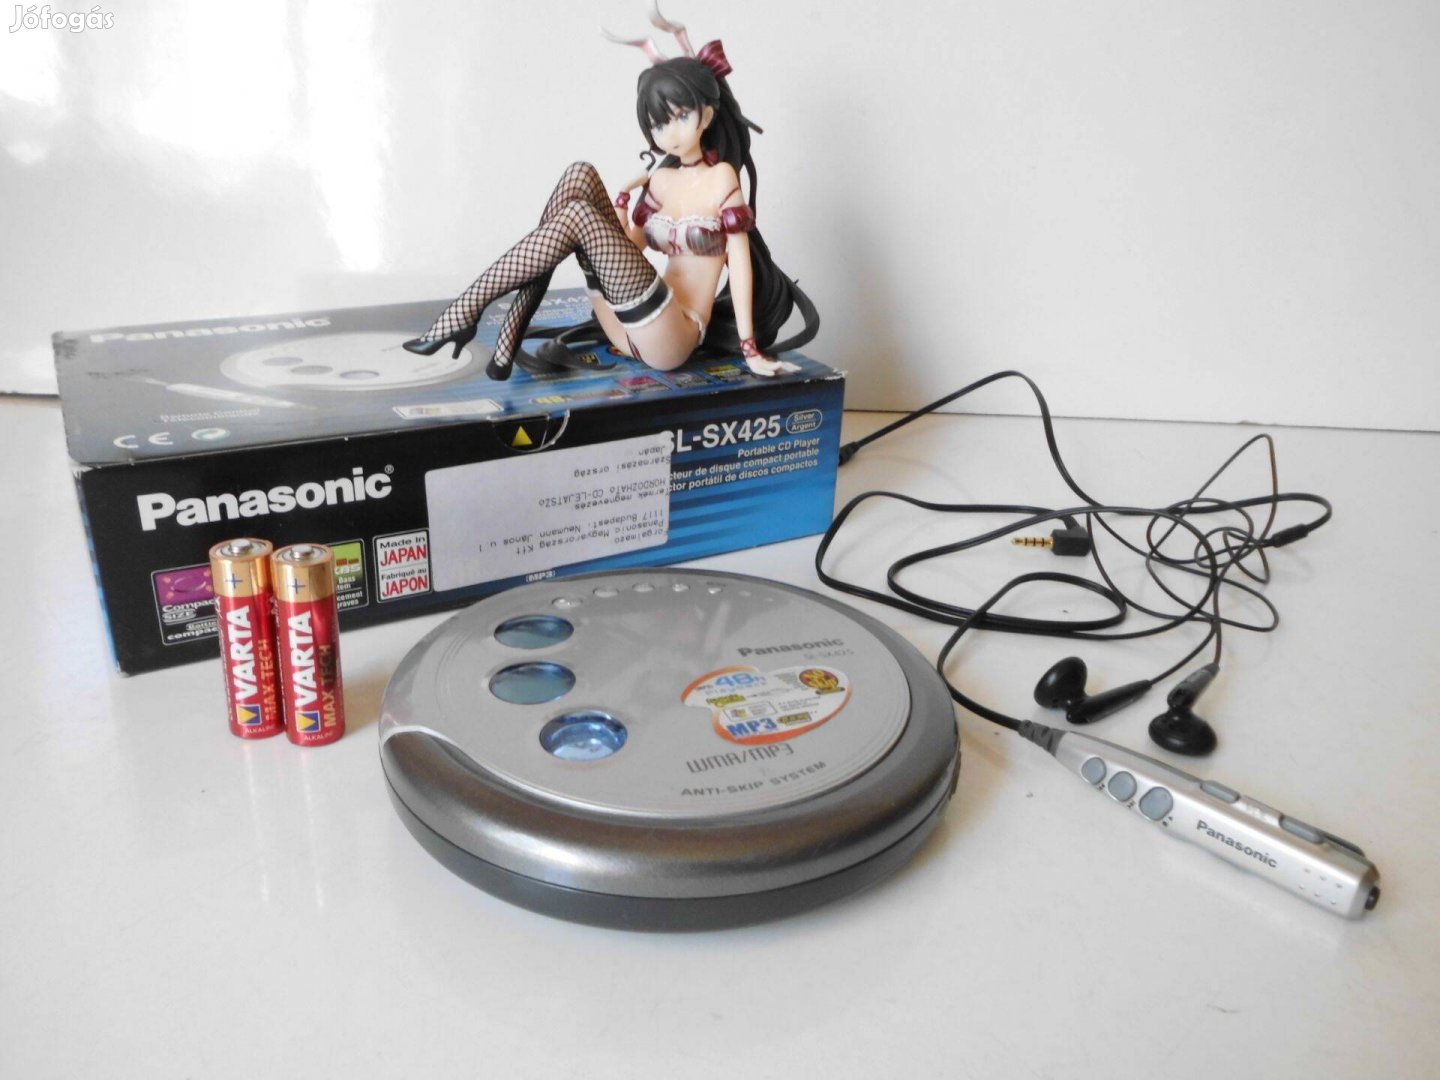 Panasonic SL-SX425 discman MP3, távvezérlővel és fülhallgatóval